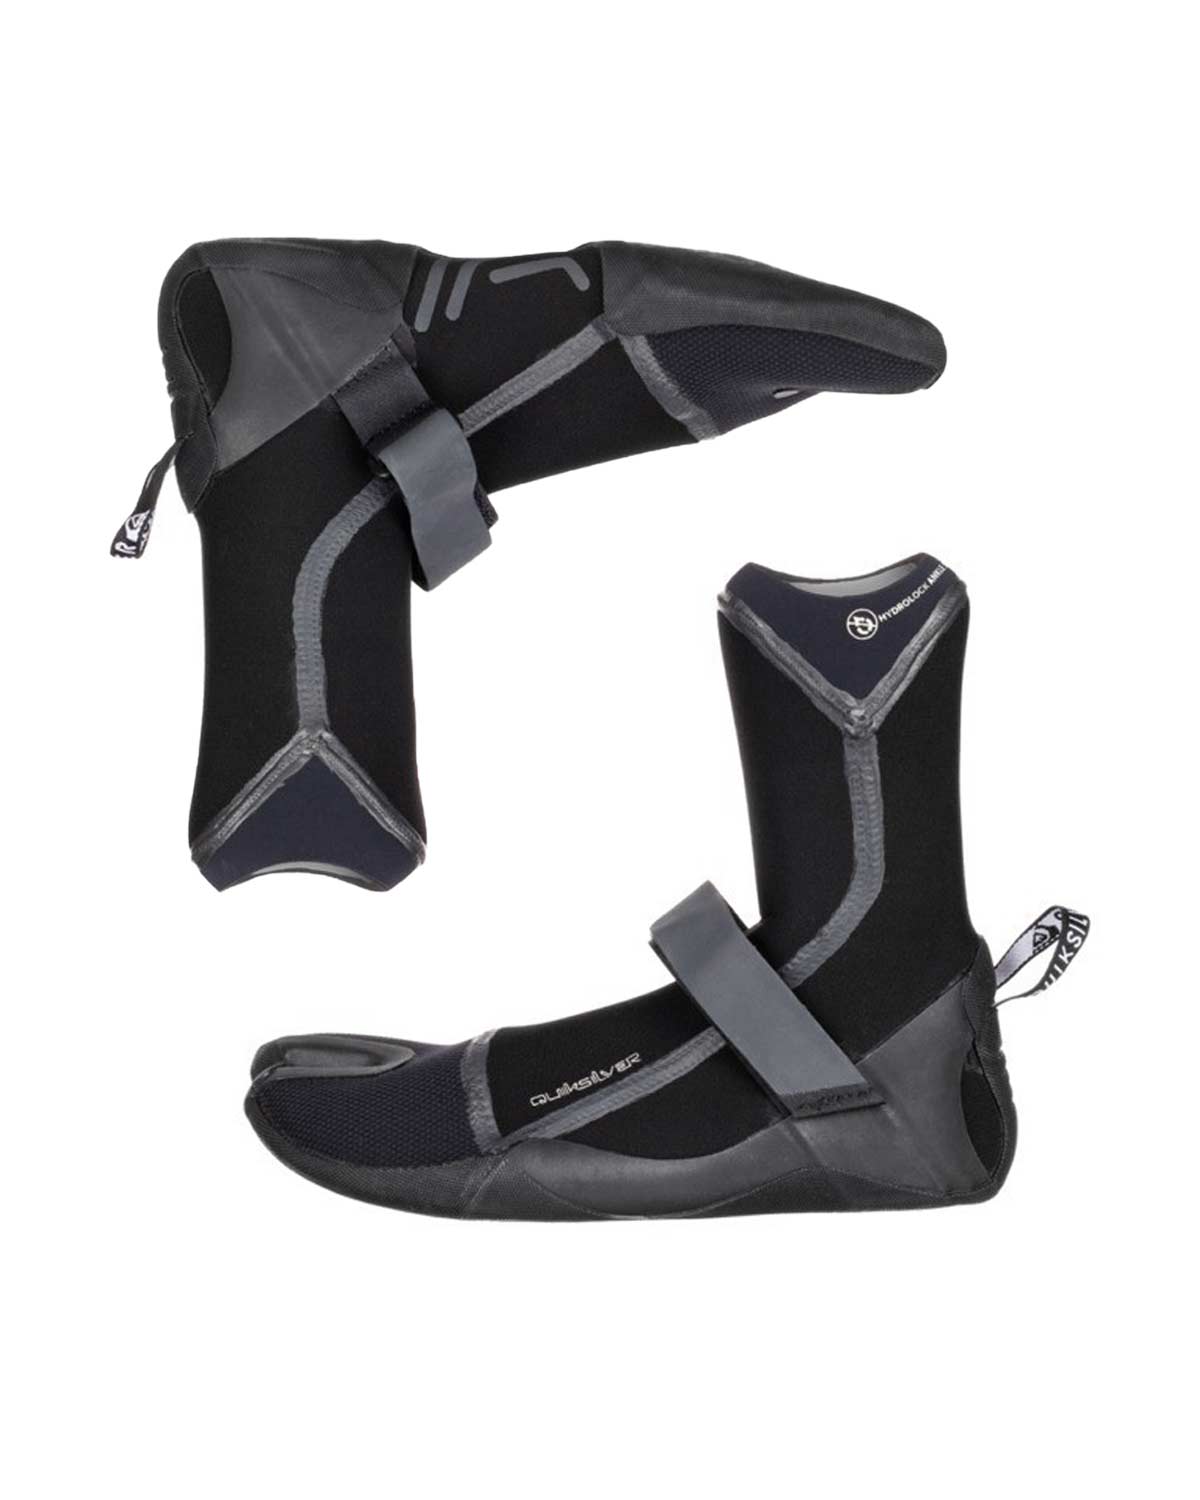 5mm Quiksilver MARATHON SESSIONS Split Toe Wetsuit Boots